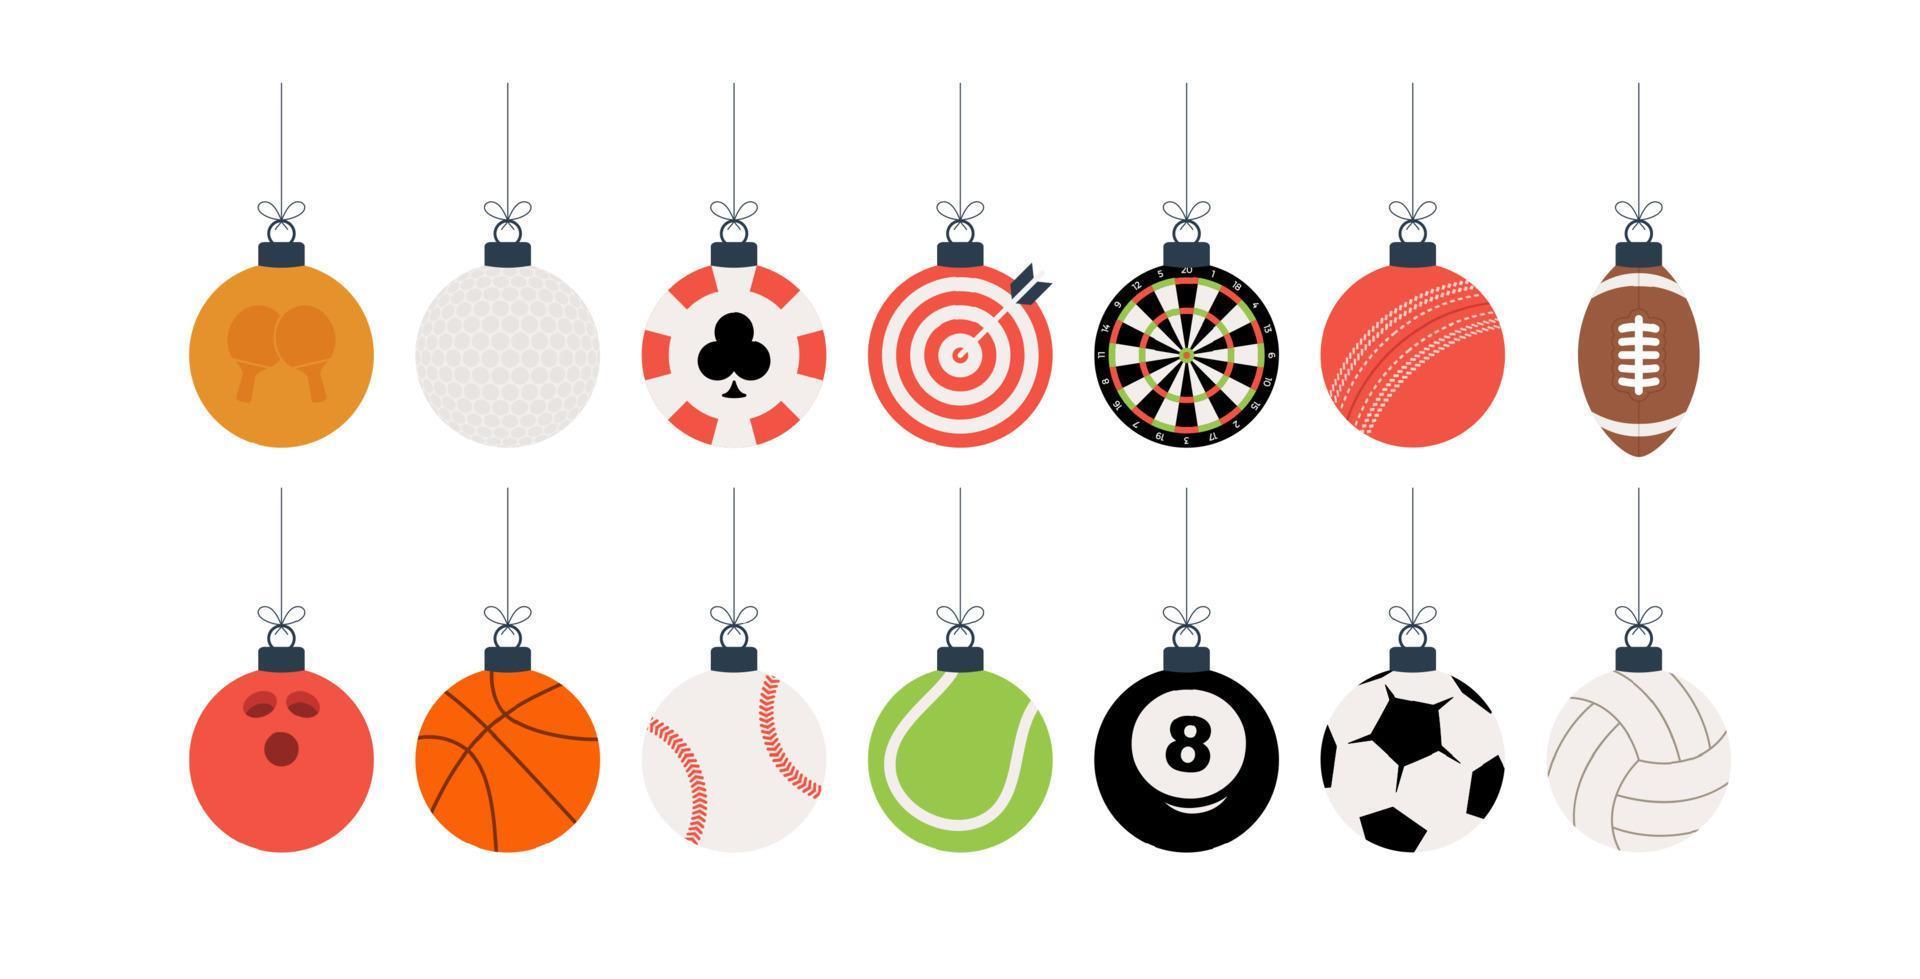 sport julbollar set. julset med sport baseball, basket, fotboll, tennis, cricket, fotboll, volleyboll, bowling, biljard, dart, golfbollar hänger på en tråd. vektor illustration.